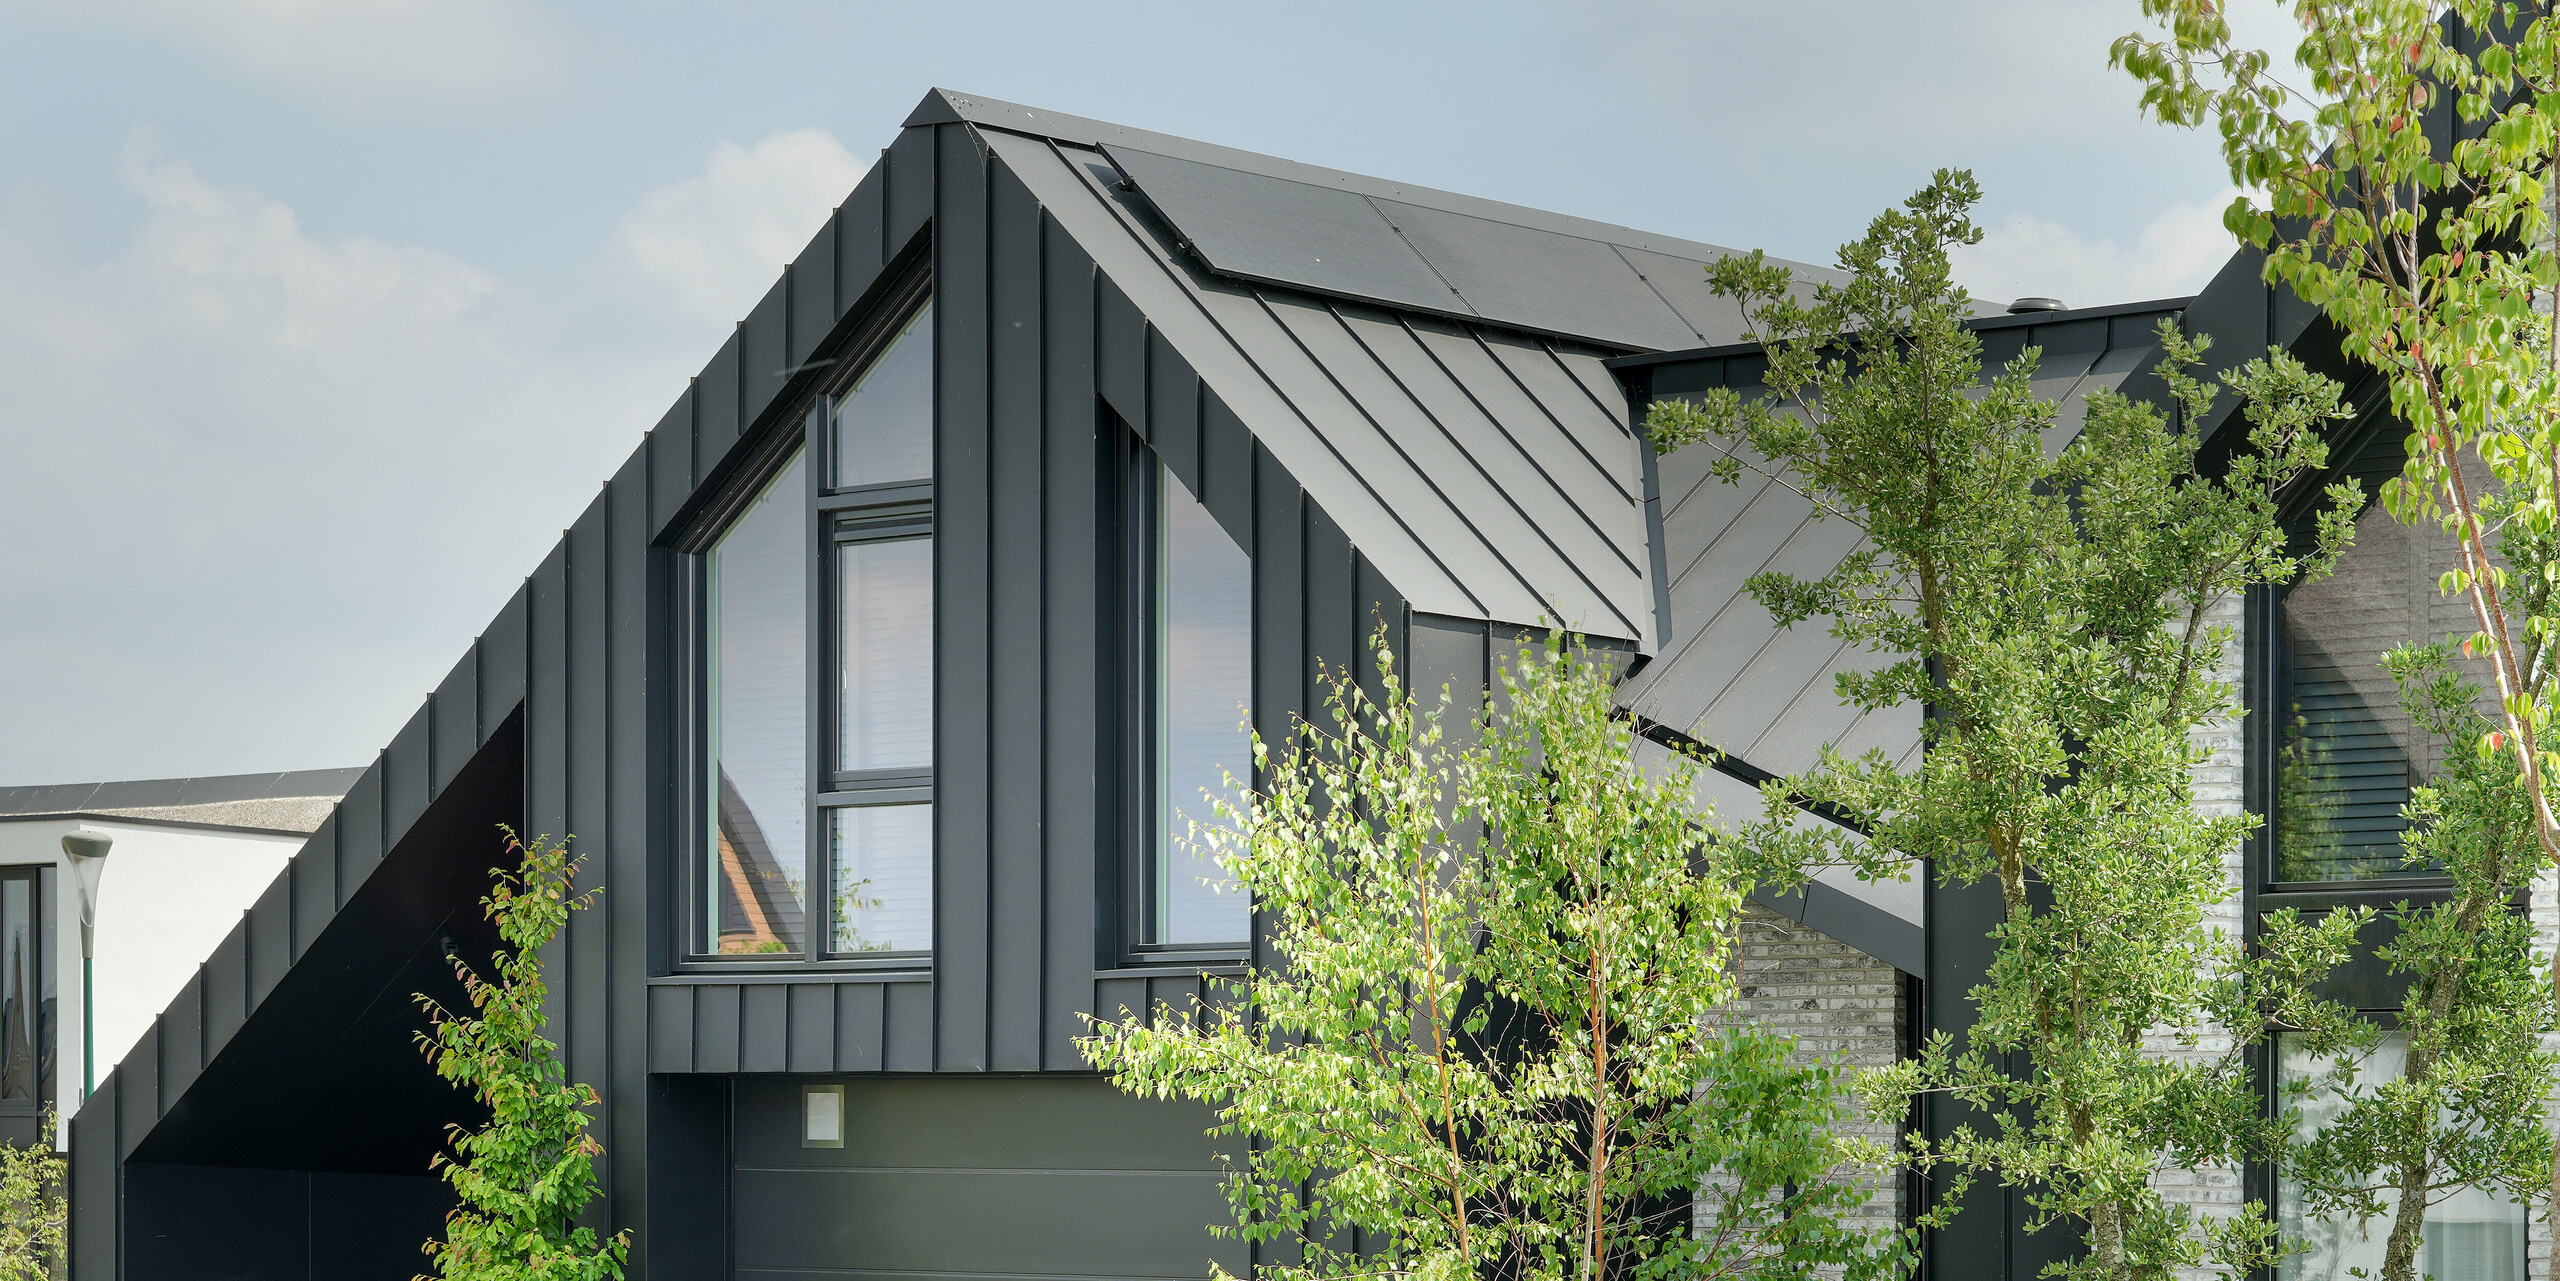 Detail eines modernen Einfamilienhauses in Veenendaal, Niederlande, das in einer natürlichen Umgebung gezeigt wird. Das Gebäude zeichnet sich durch sein schwarzes PREFALZ Spitzdach aus. Die schwarze Aluminium-Verkleidung des Gebäudes bildet einen auffälligen Kontrast zu den großen Fenstern und der hellgrauen Naturstein-Fassade. Die abwechslungsreiche Mischung aus dunklen und hellen Oberflächen schafft ein spannendes Nebeneinander, das durch die umgebende Grünfläche noch akzentuiert wird.